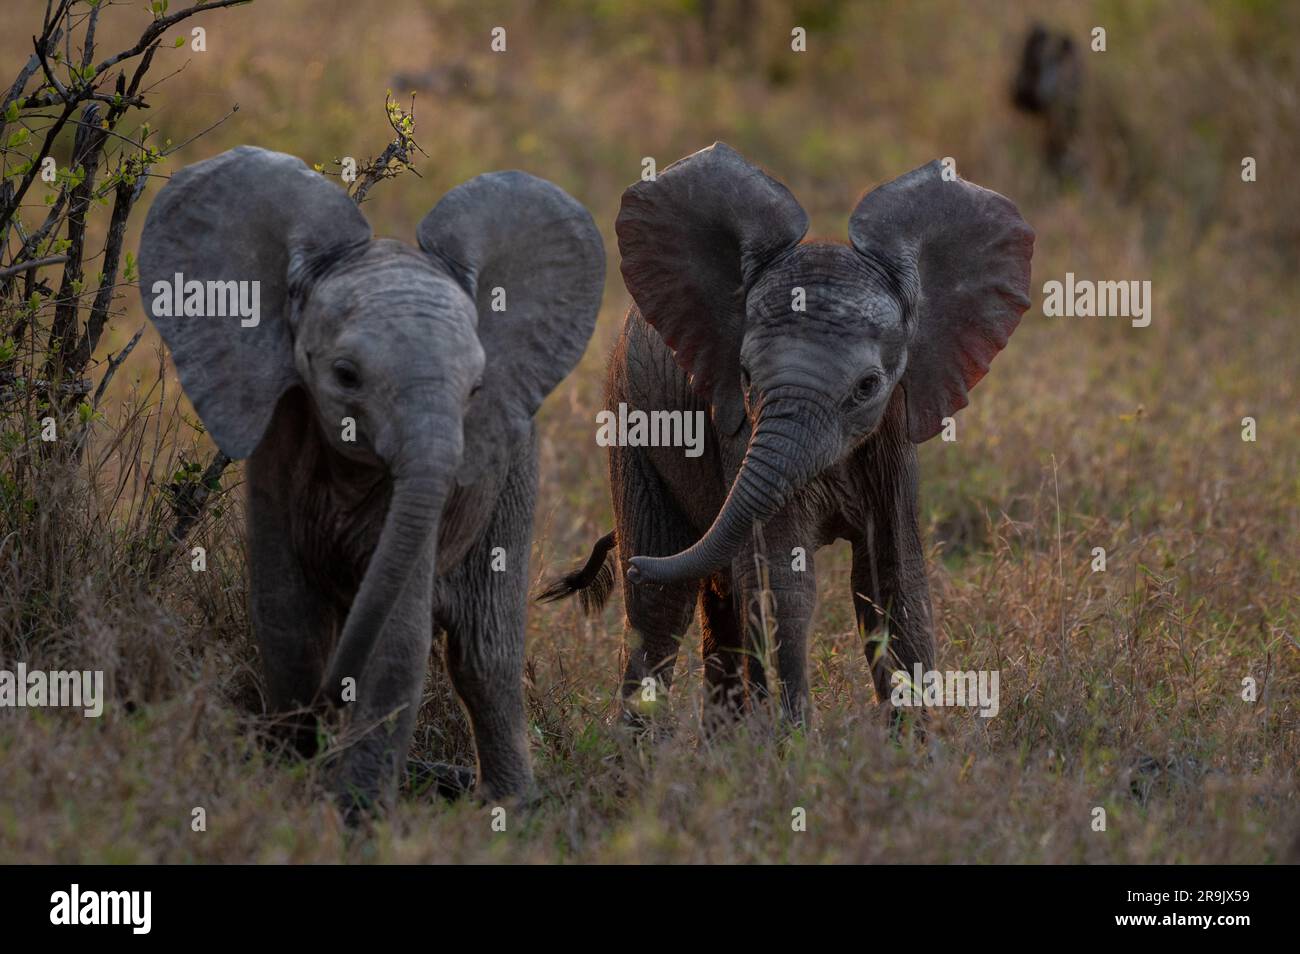 Deux petits éléphants, Loxodonta africana, marchant ensemble dans de longues herbes. Banque D'Images